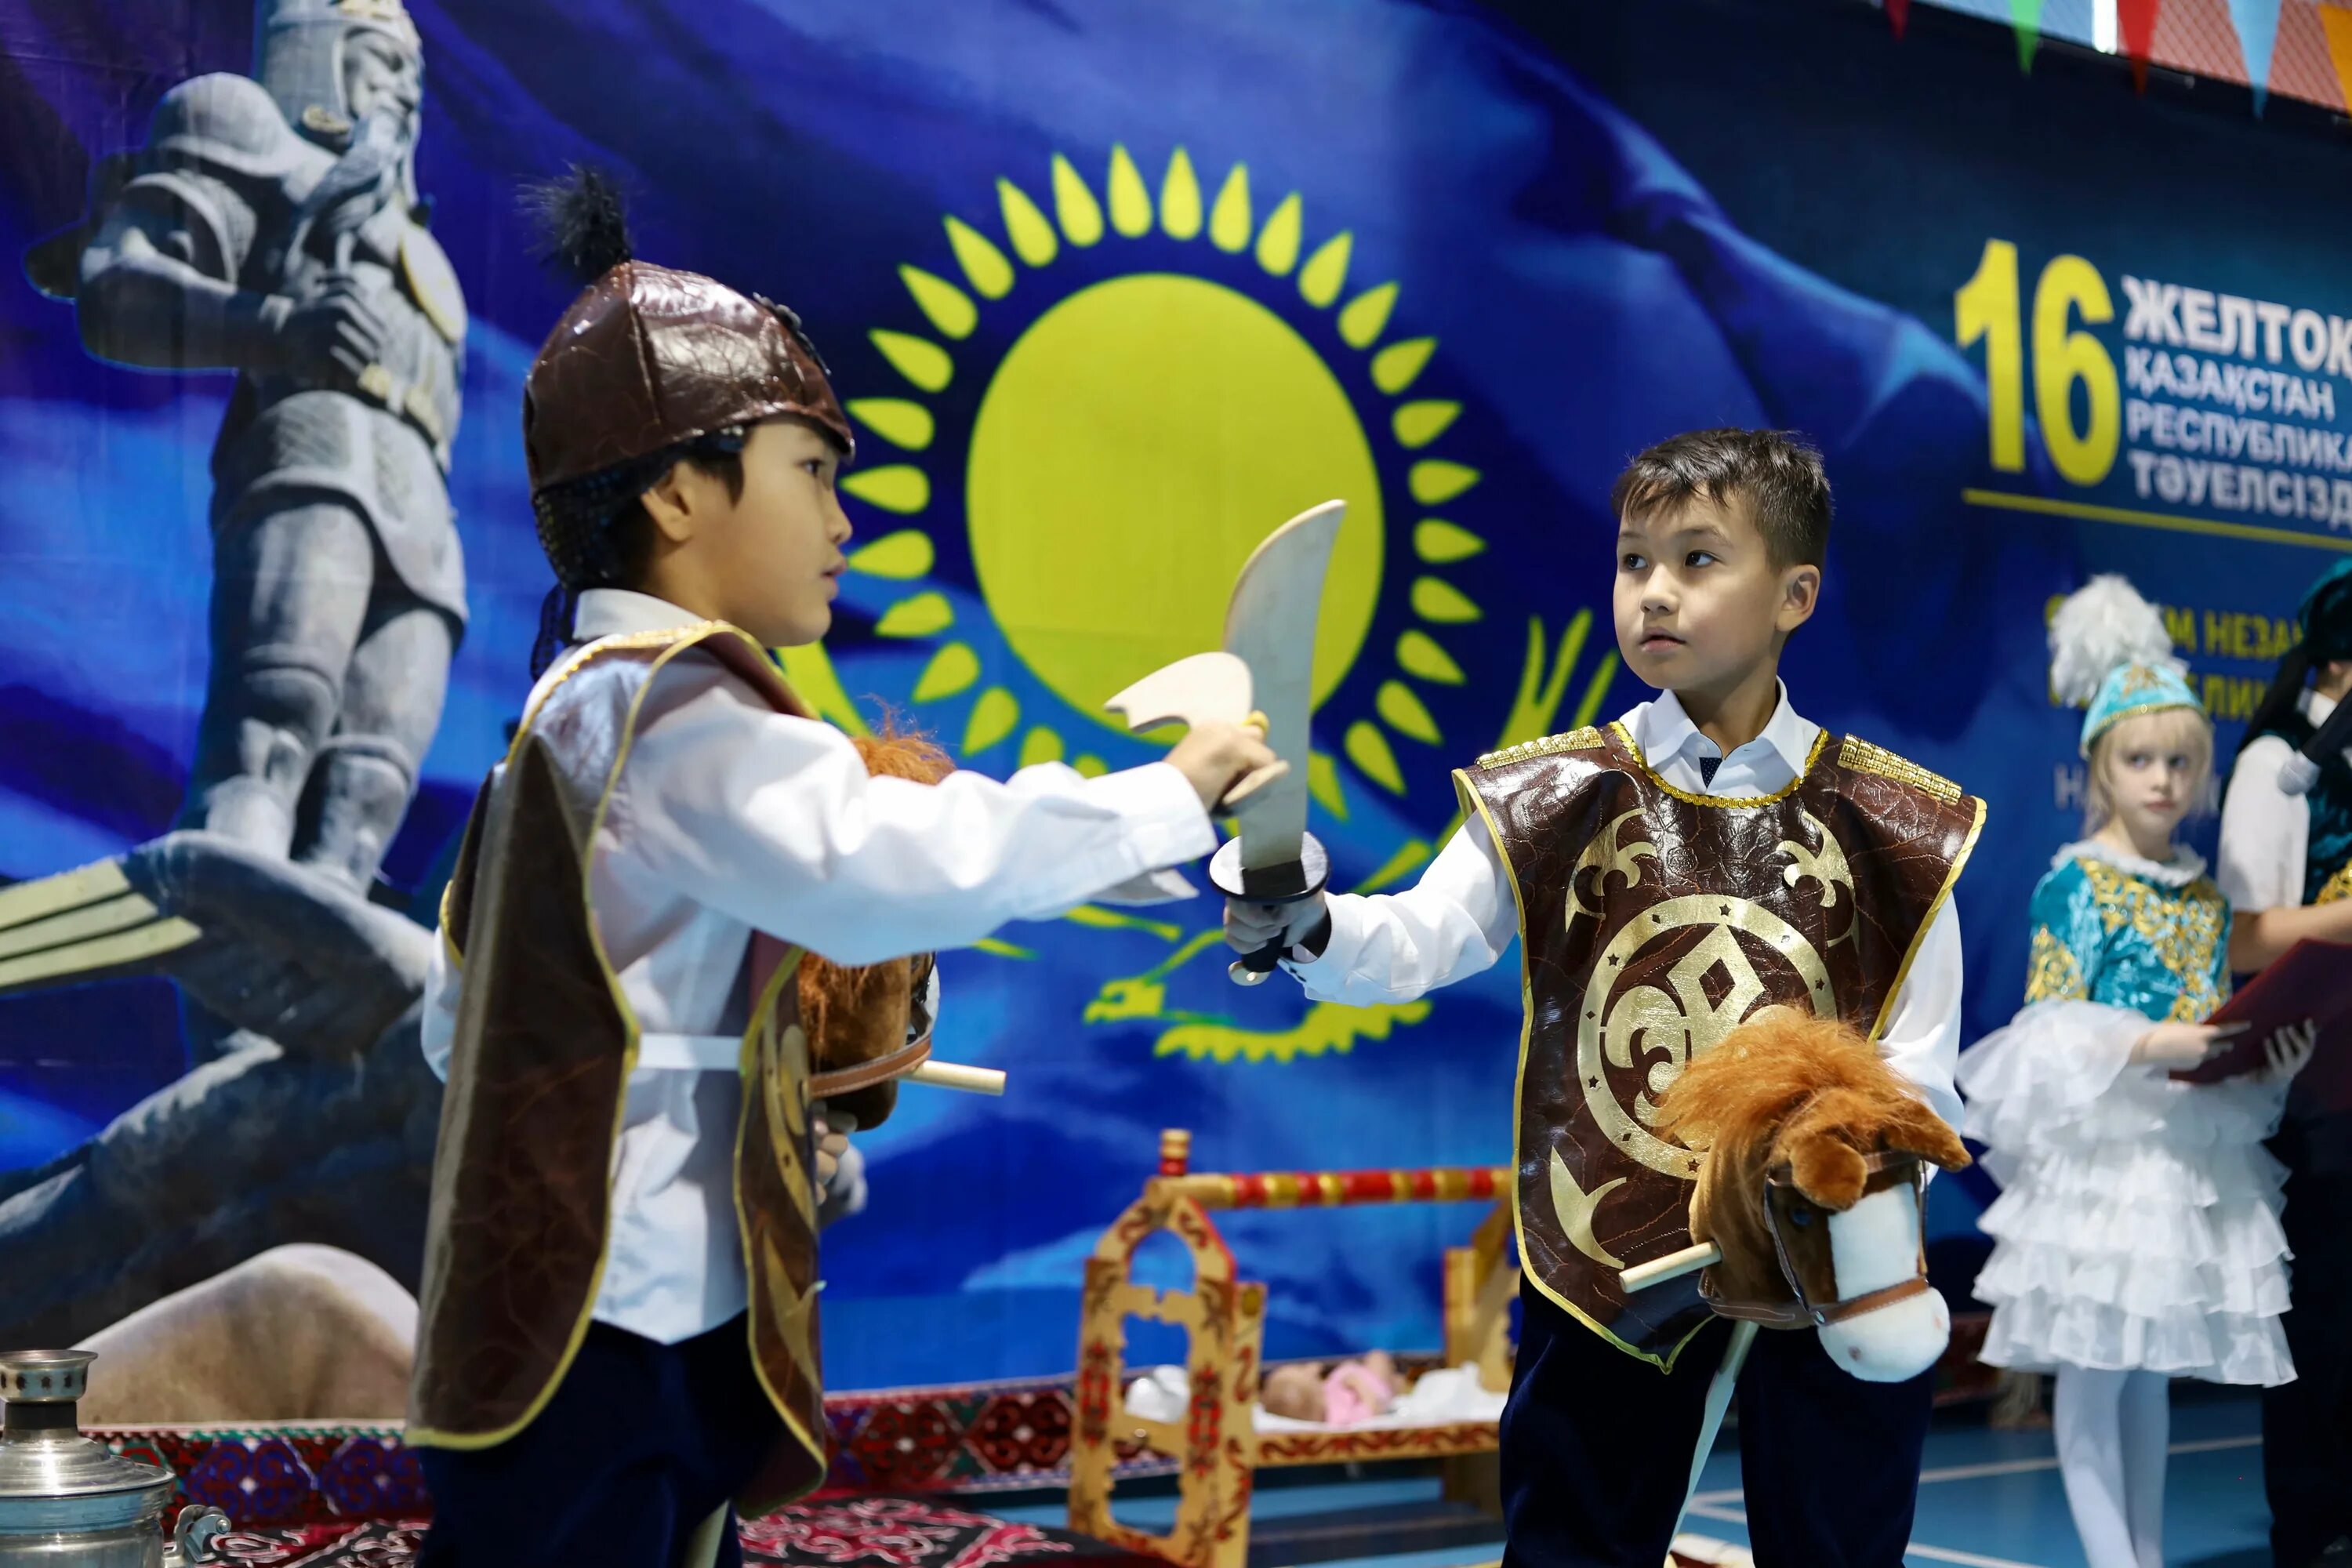 30 декабря казахстан. 16 Декабря день независимости Казахстана. С праздником 16 декабря день независимости Казахстана. Мероприятия для детей к Дню независимости. С праздником независимости.